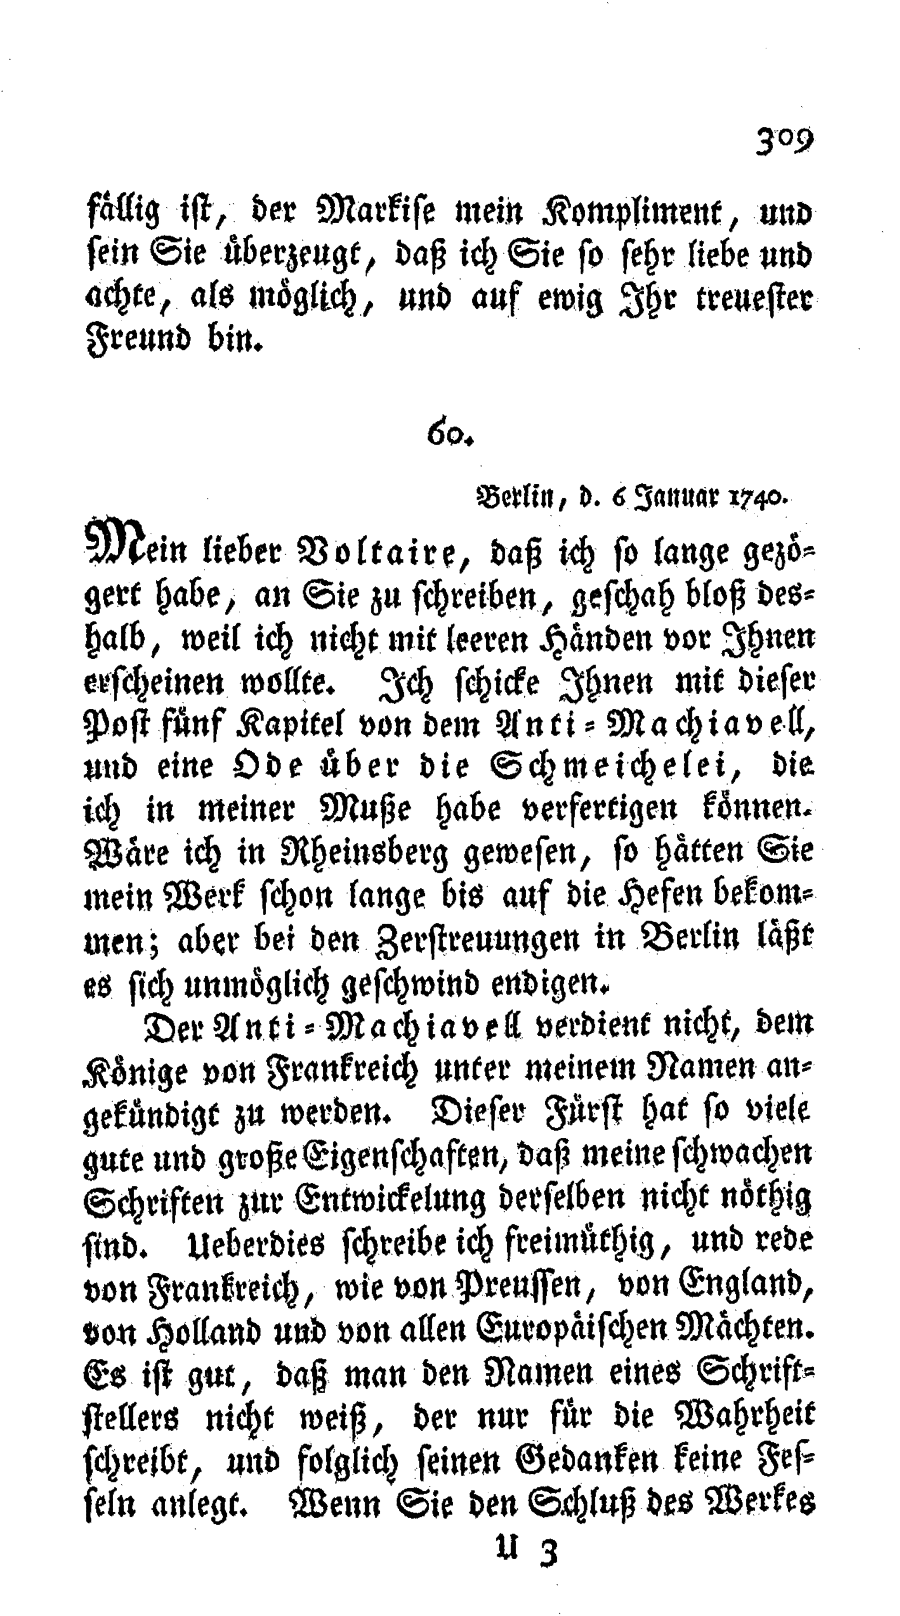 S. 309, Obj. 2